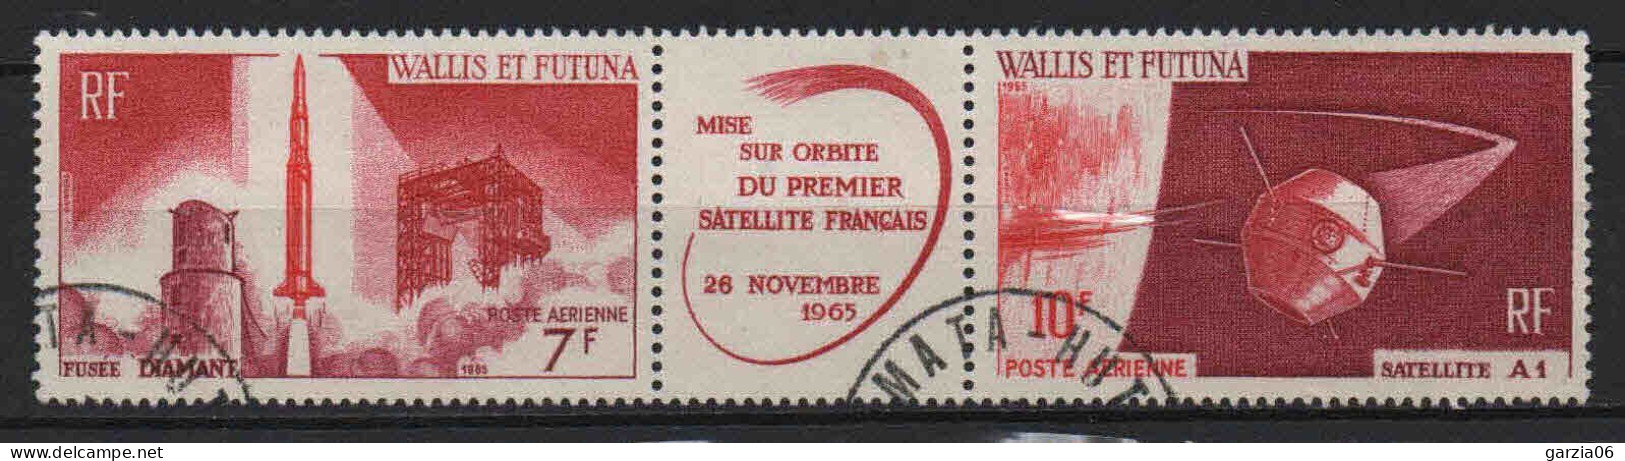 Wallis Et Futuna  - 1965  -  1ier Satellite Français  - PA 24/25A - Oblit - Used - Usados